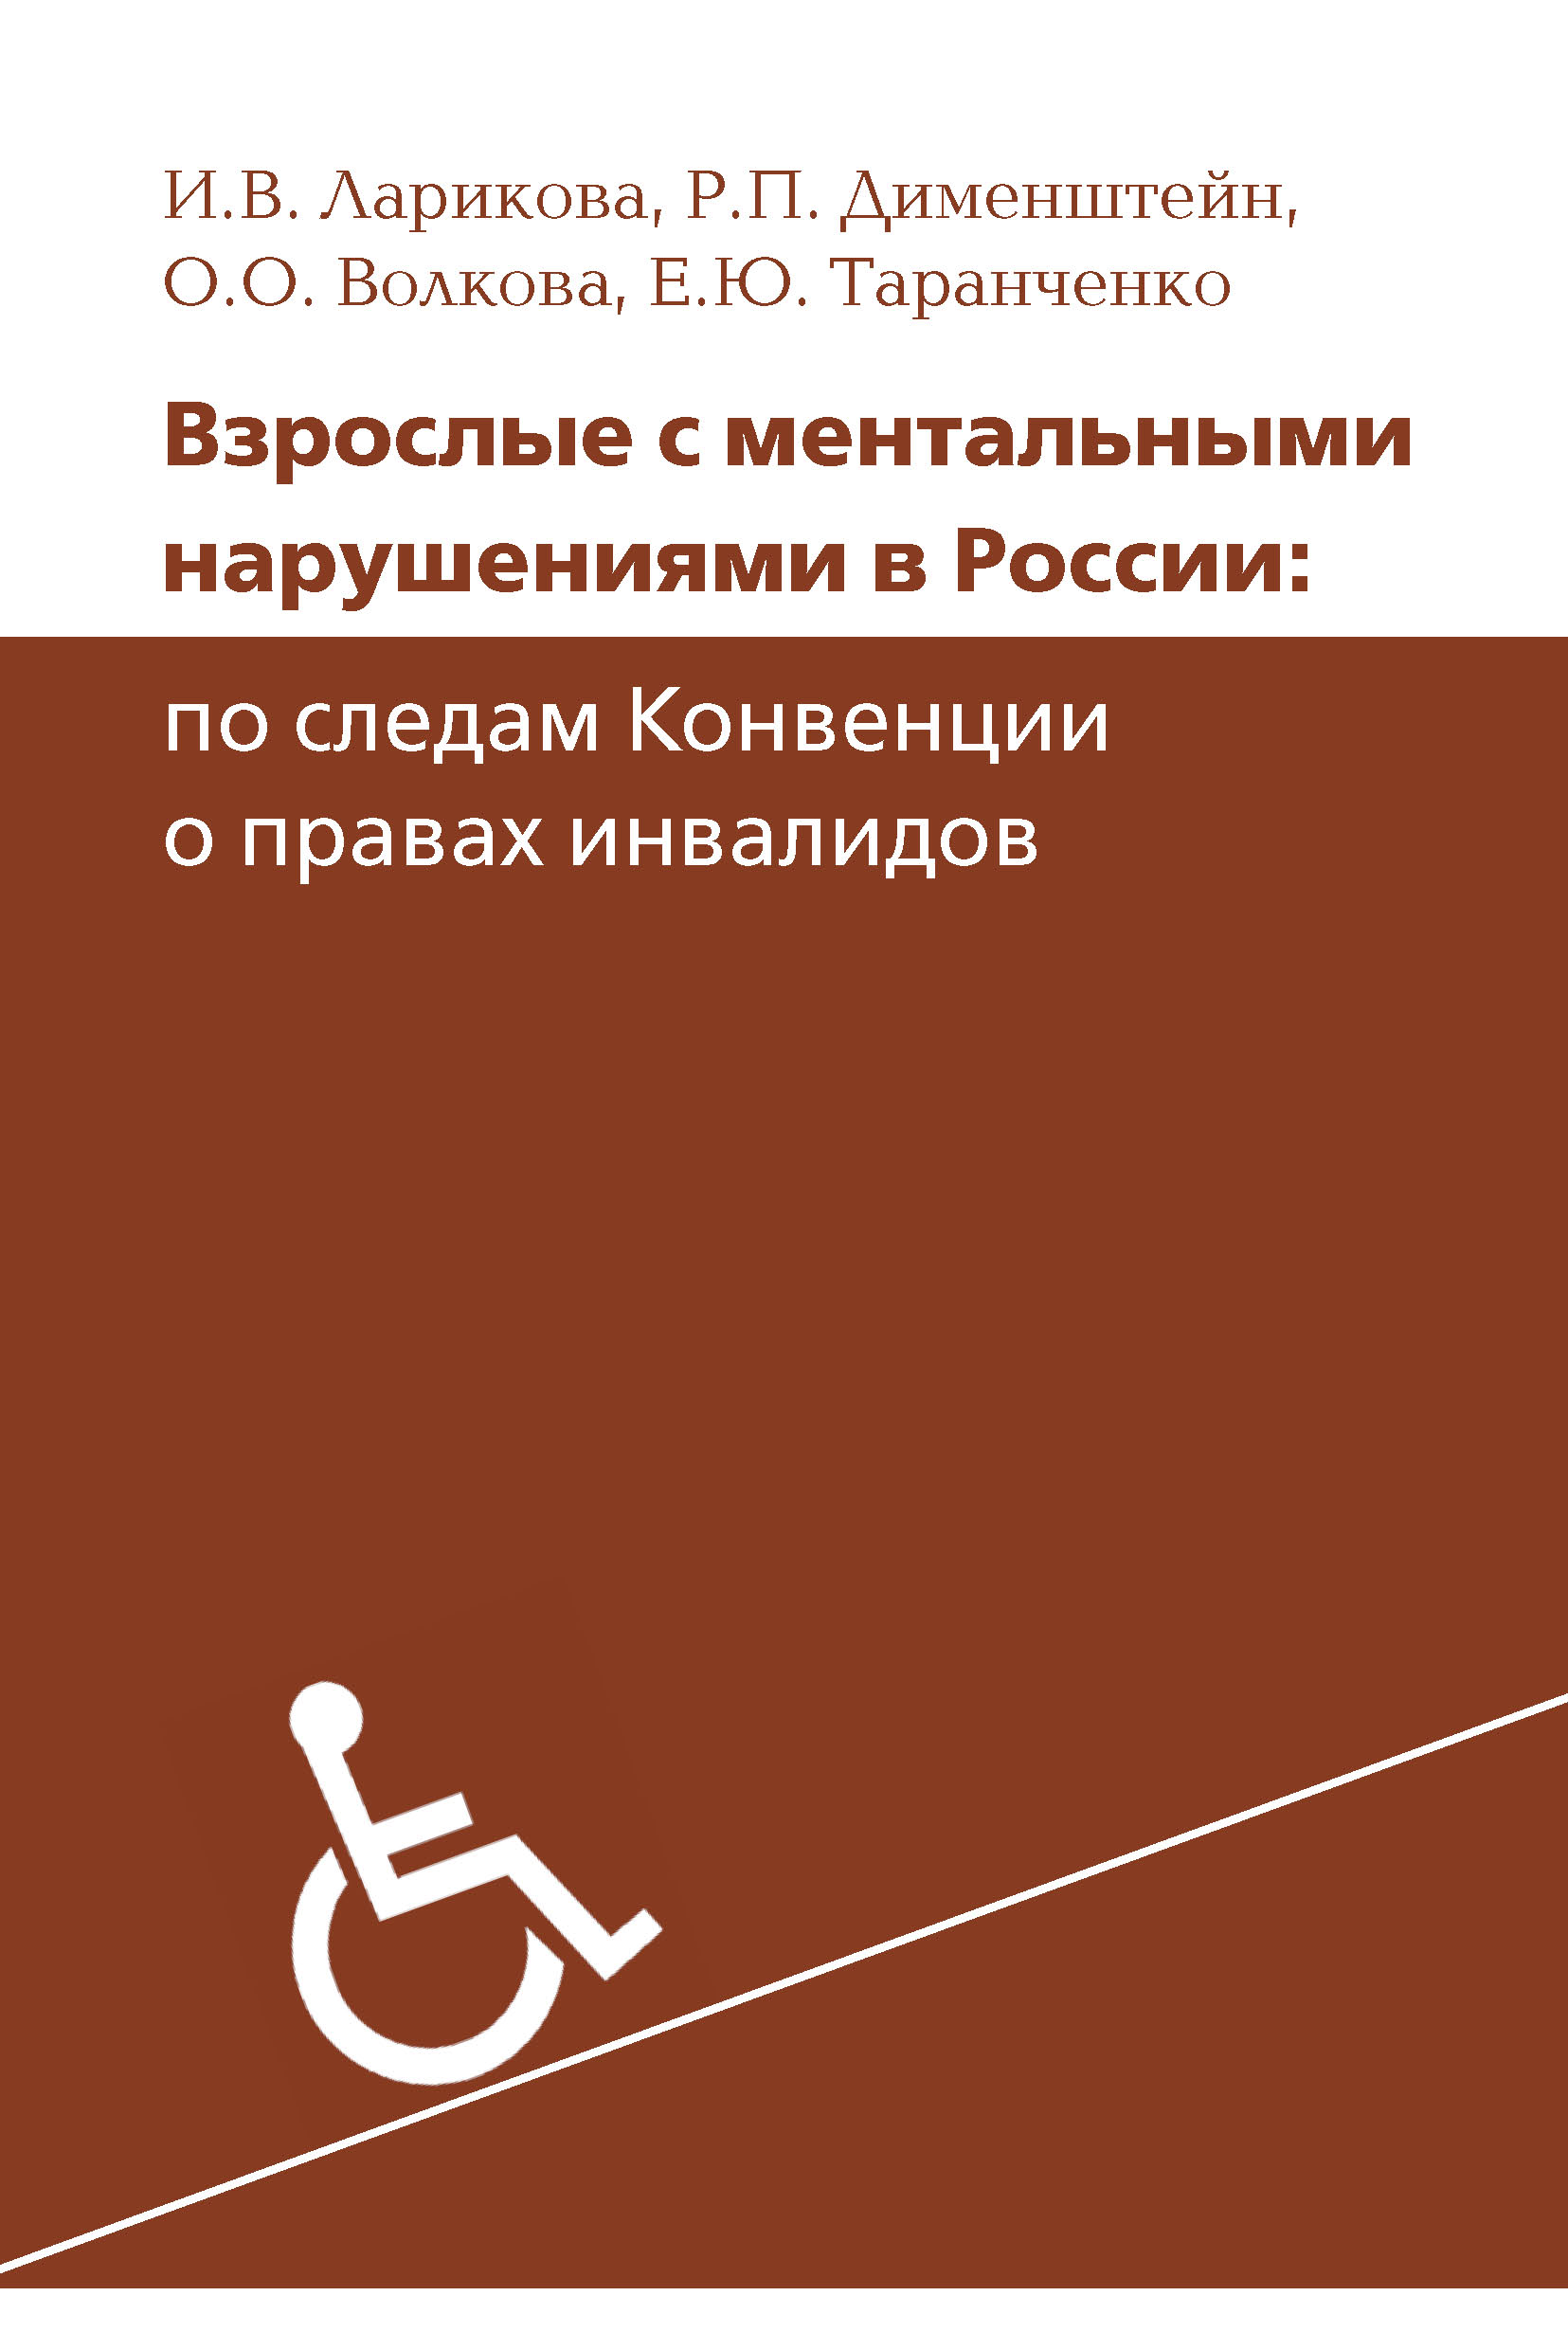 Взрослые с ментальными нарушениями в России: по следам Конвенции о правах инвалидов